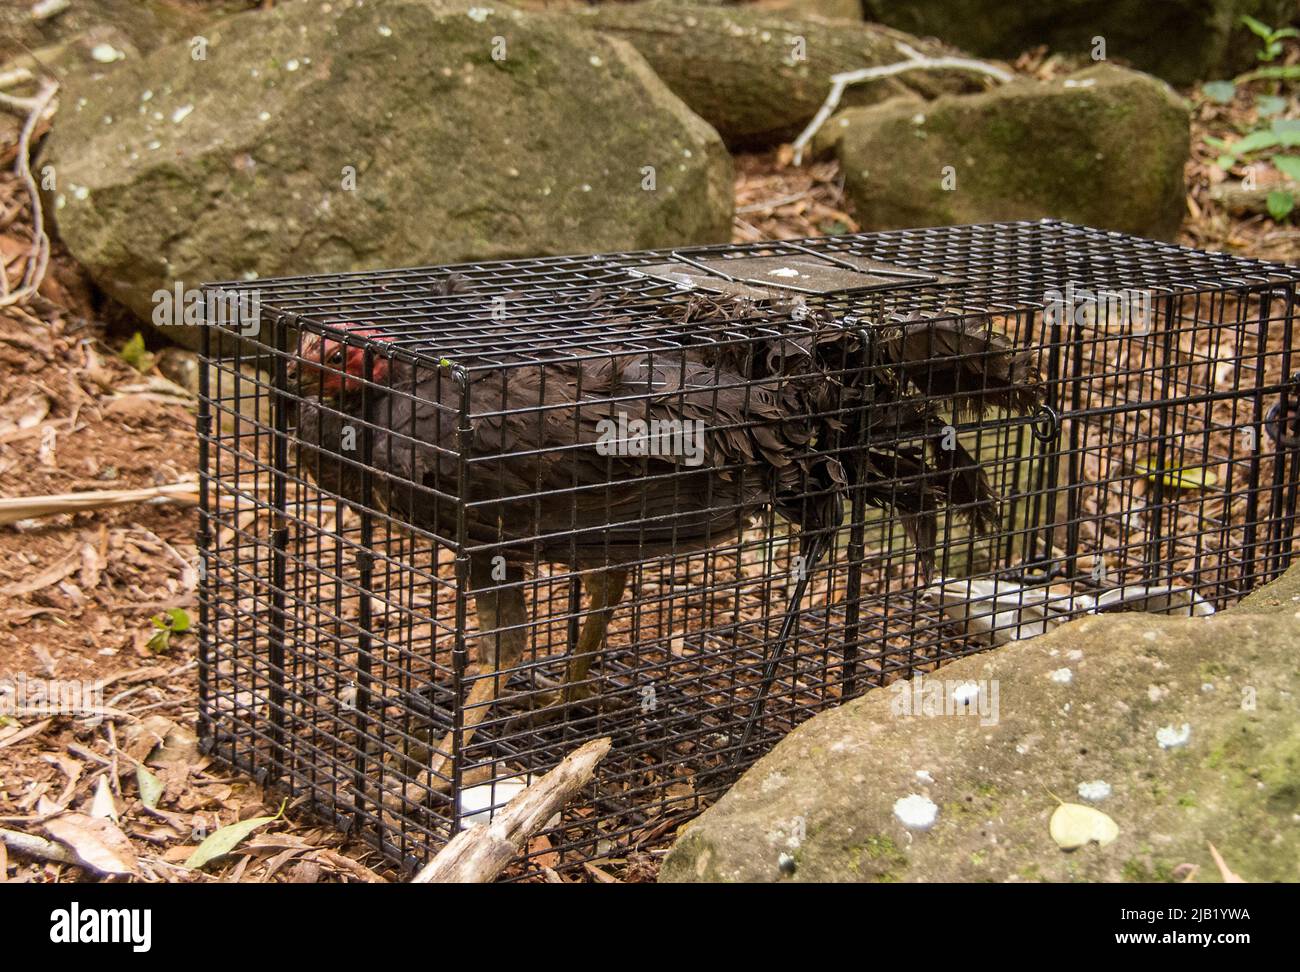 Australian Brush turkey (alectura lathami) inavvertitamente catturato in una trappola umana di gatto ferale nella foresta pluviale, Queensland. Rilasciato senza danni. Foto Stock